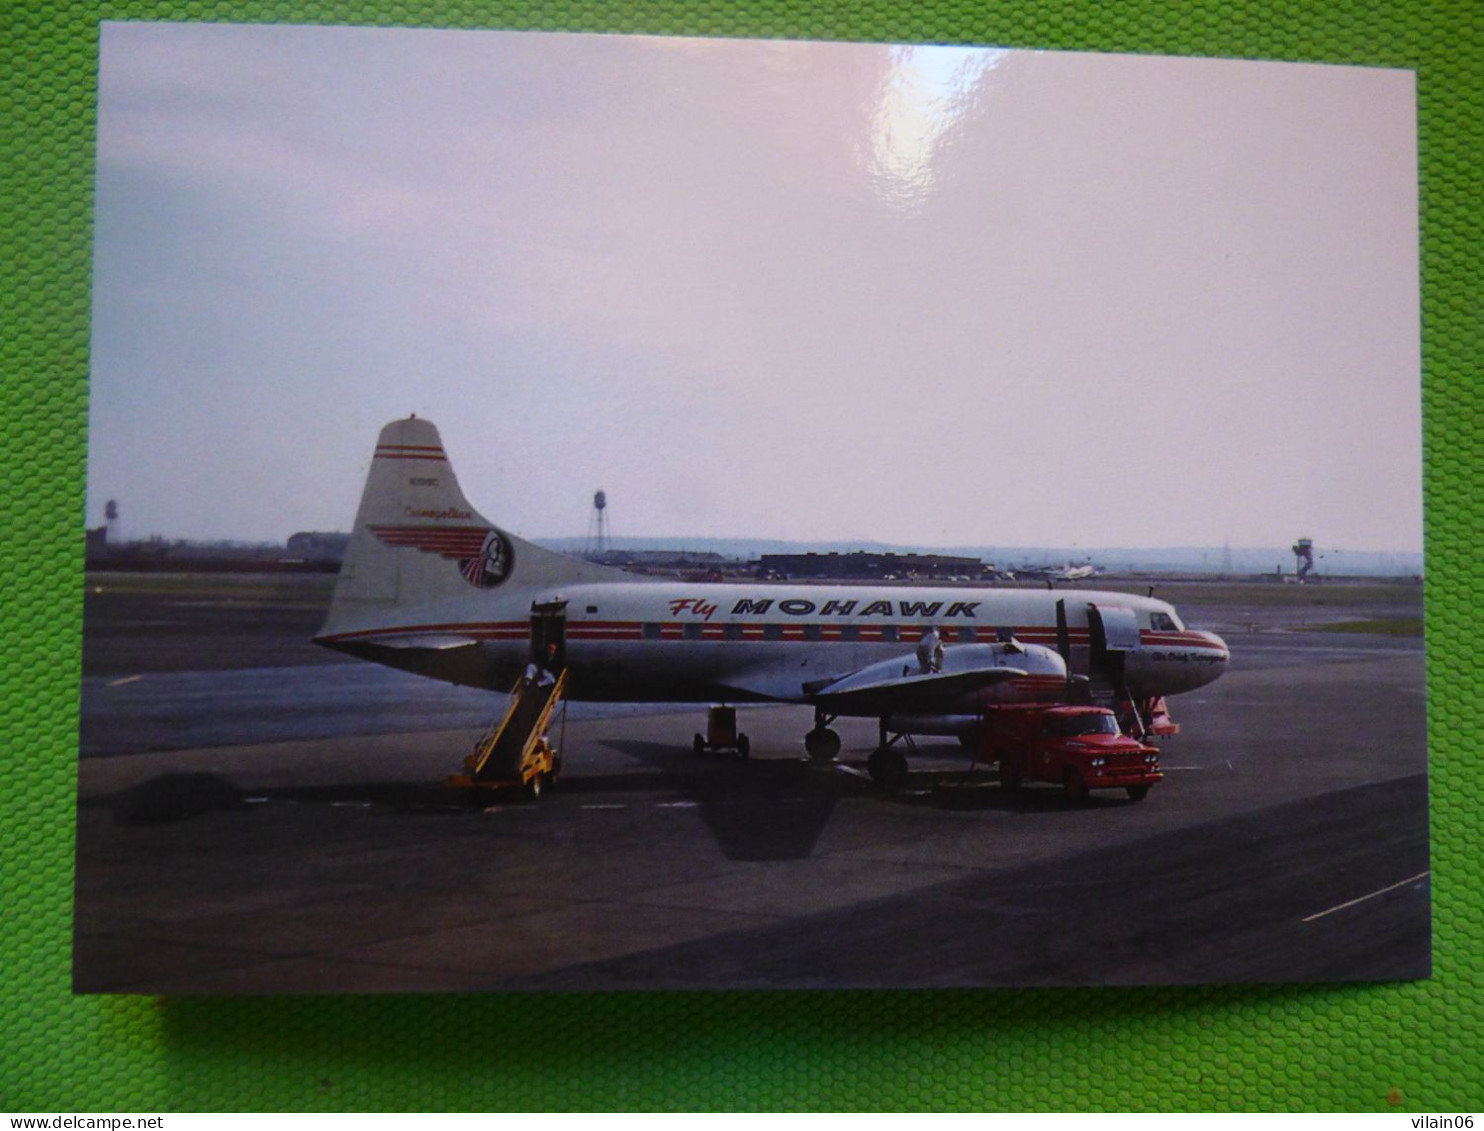 MOHWAK AIRLINES   CONVAIR 240   N1019C - 1946-....: Ere Moderne